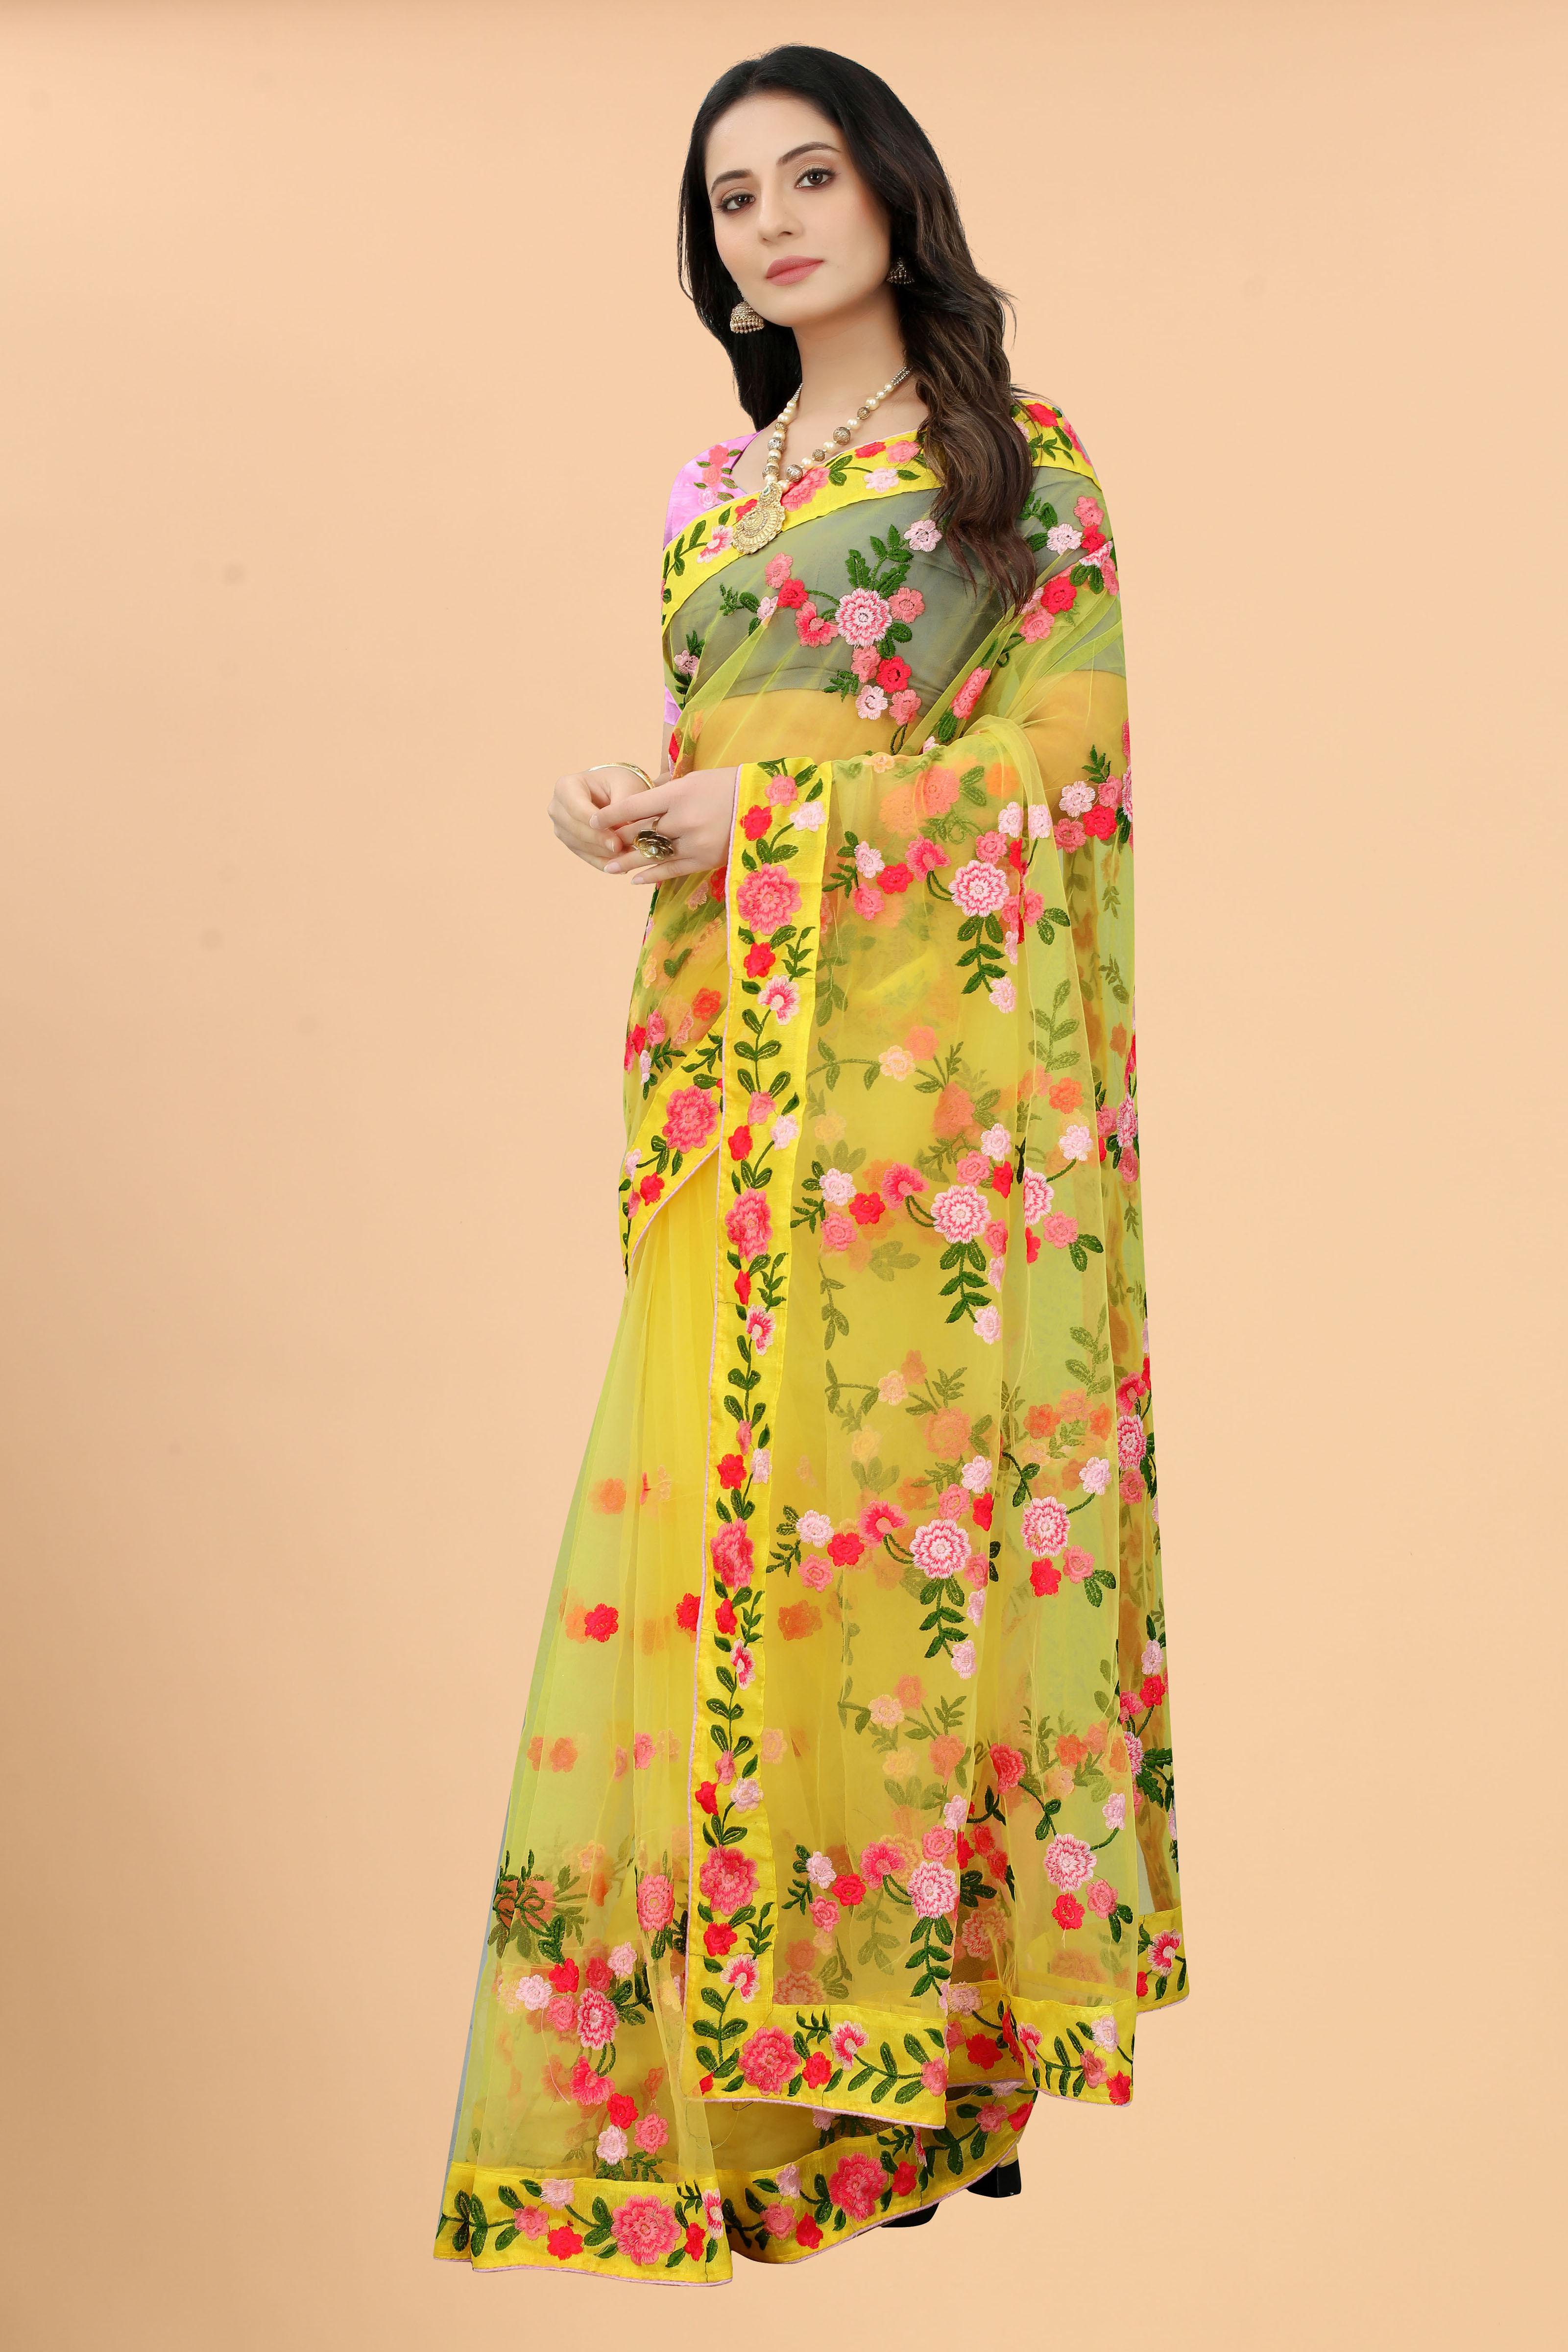 rajvansh by rewaa stylish designer party wear saree collection design 2023